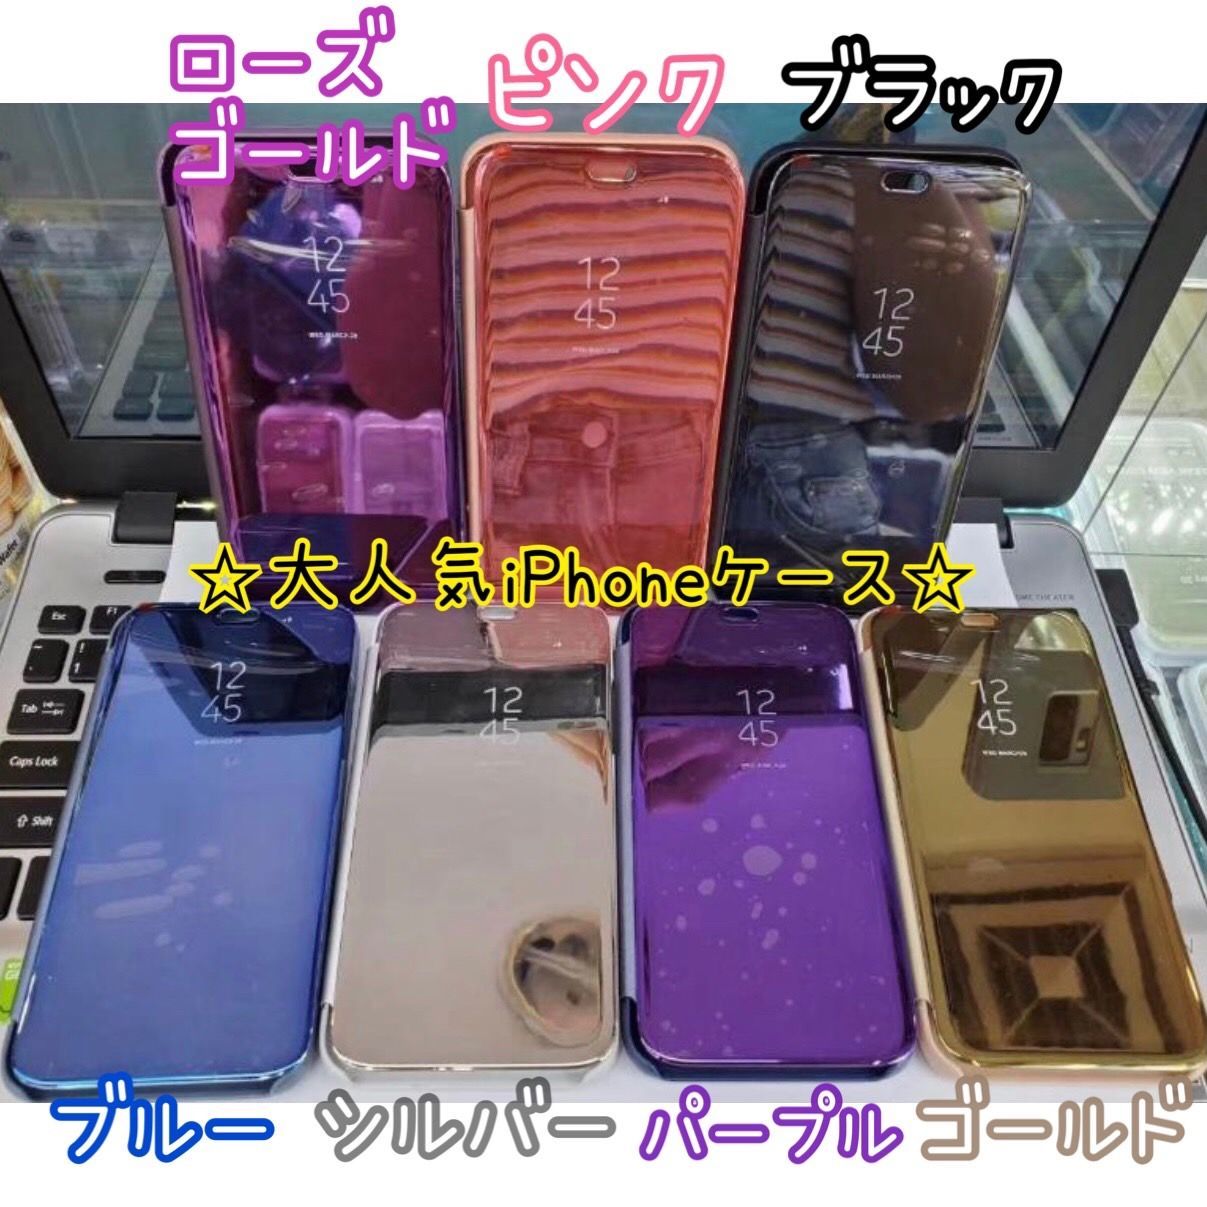 ☆12専用ページ☆ミラー手帳型 シンプル 軽量 スマホ iphoneケース